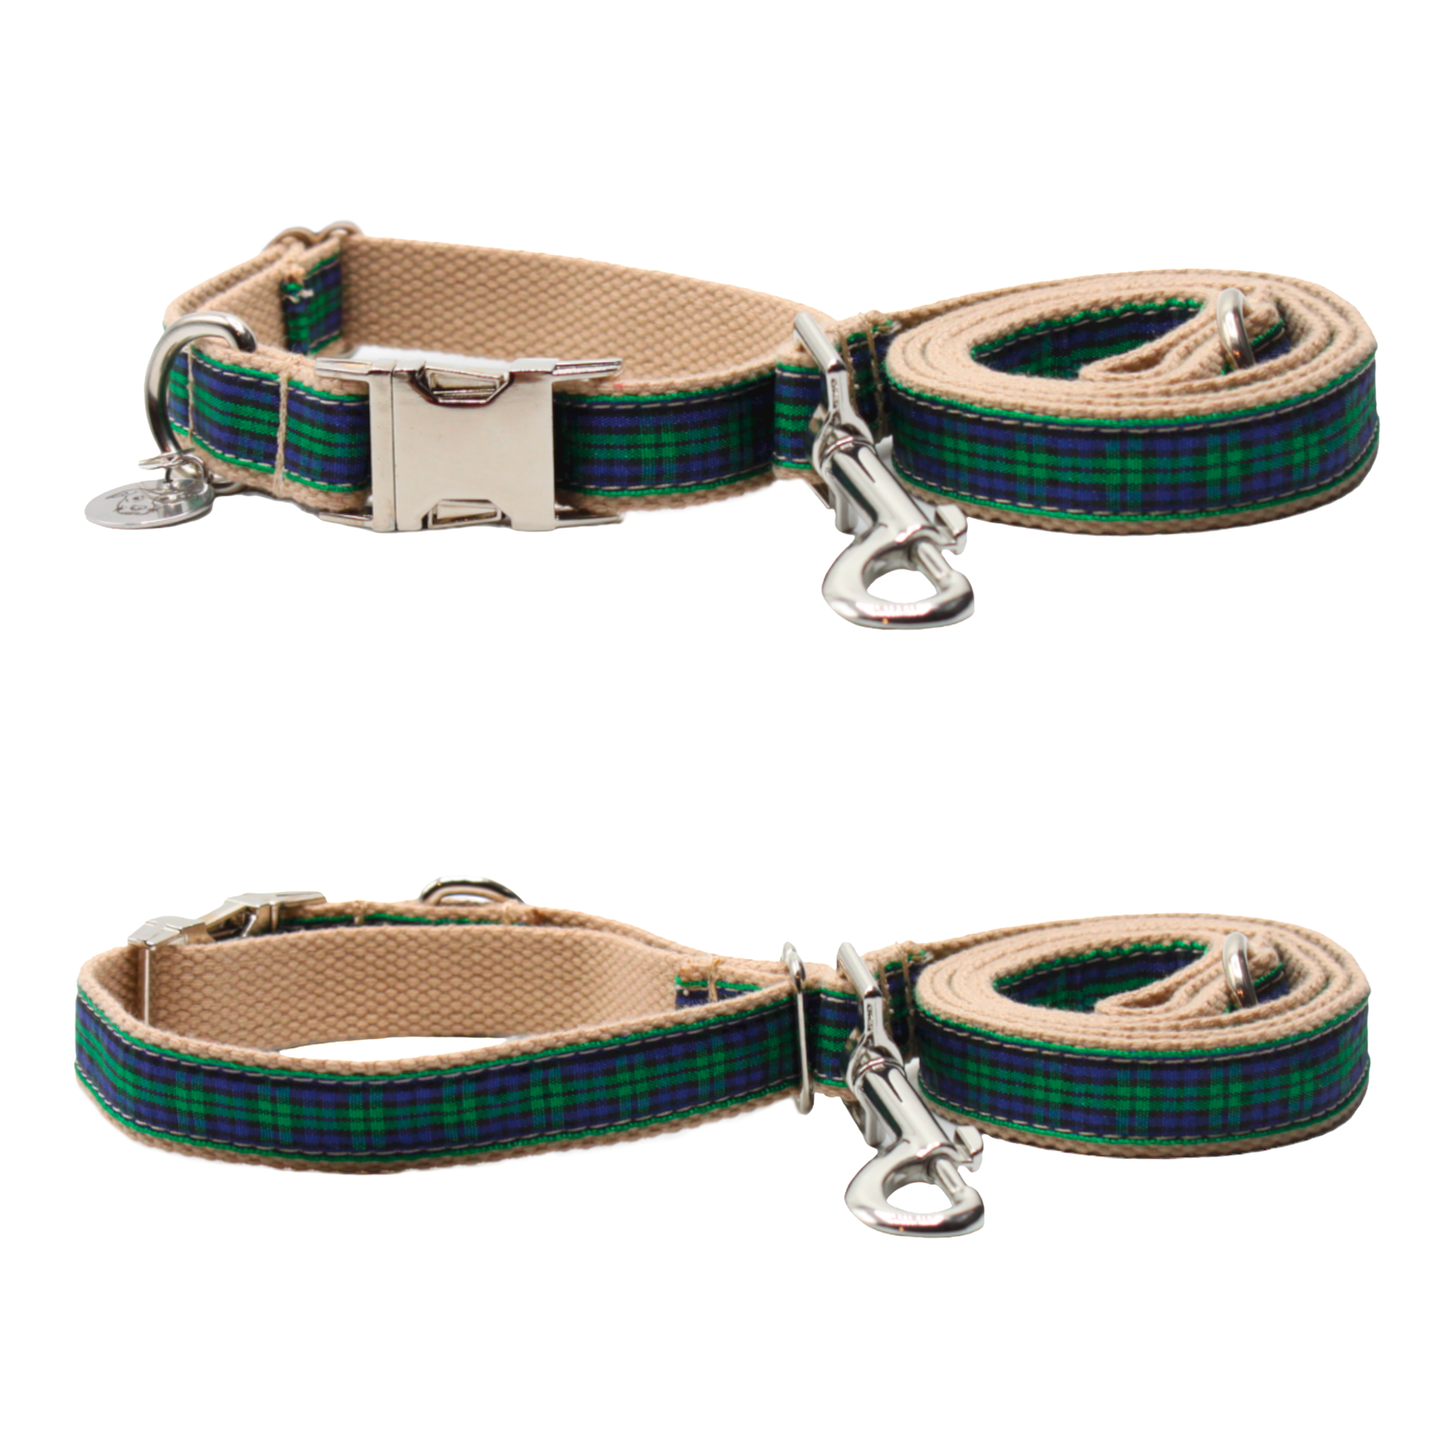 collier laisse chien boucle métal argenté écossais tartan vert twiggy